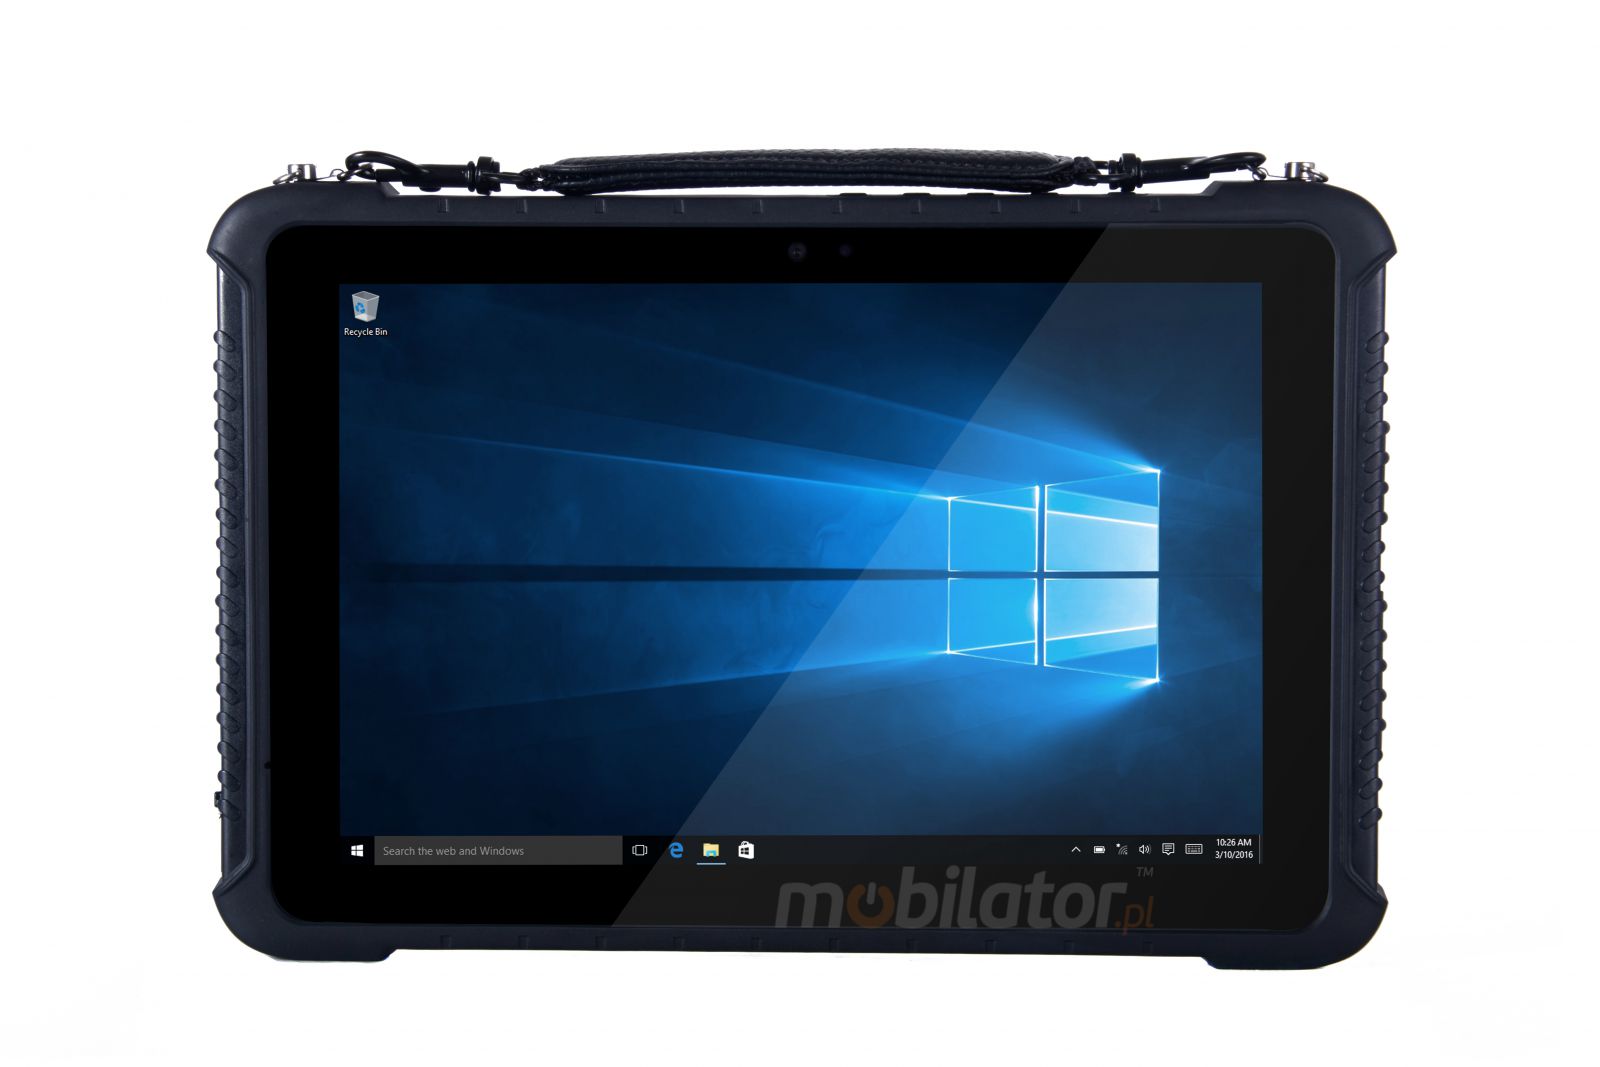 Emdoor I16K v.13 - Solidny dziesiciocalowy tablet z Windows 10 IoT, Bluetooth, skanerem kodw kreskowych 2D, 8GB RAM pamici i dyskiem 128GB SSD